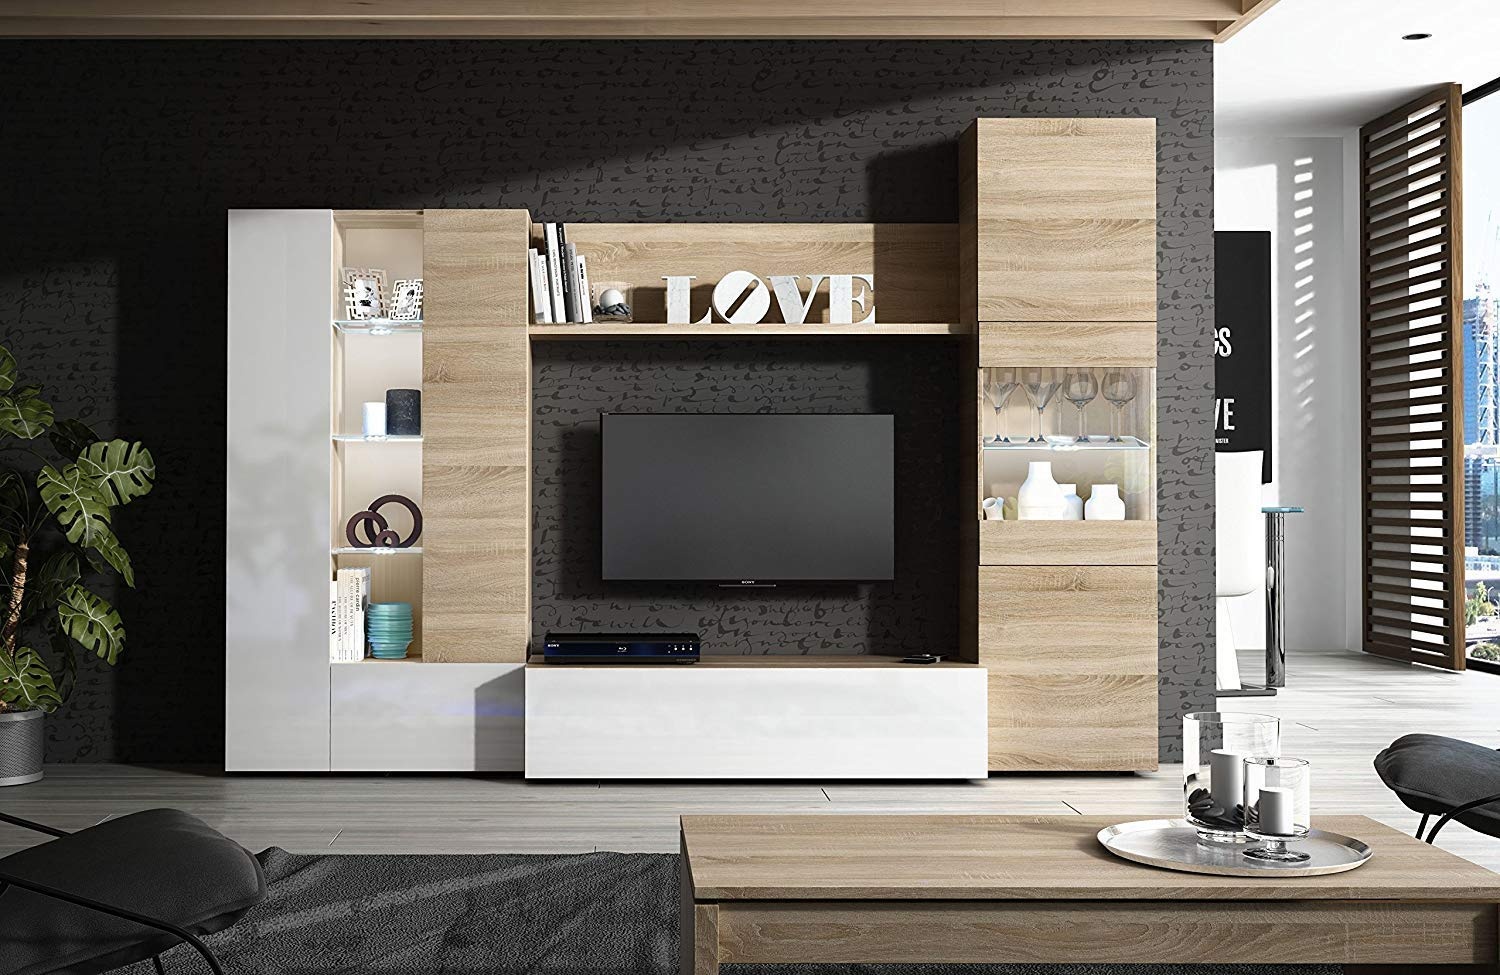 Mobèl Wandschrank TV-Möbel mit Regal, LED-Beleuchtung für Wohnzimmer, Holz, Fernseher, Esszimmer, modernes Design, 260 x 185 x 42 cm, Farbe Weiß glänzend und Eiche